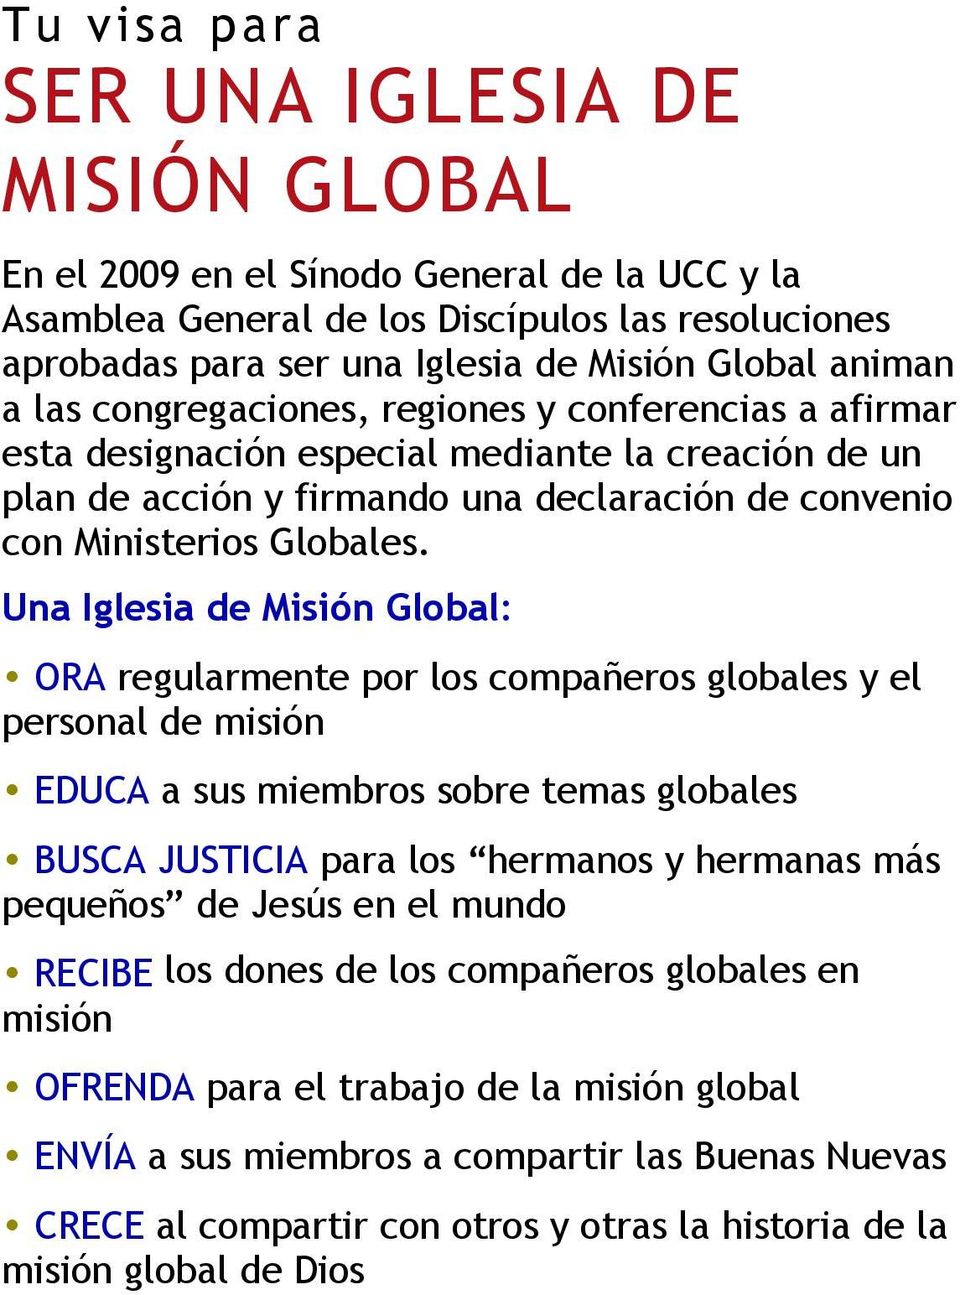 Una Iglesia de Misión Global: ORA regularmente por los compañeros globales y el personal de misión EDUCA a sus miembros sobre temas globales BUSCA JUSTICIA para los hermanos y hermanas más pequeños